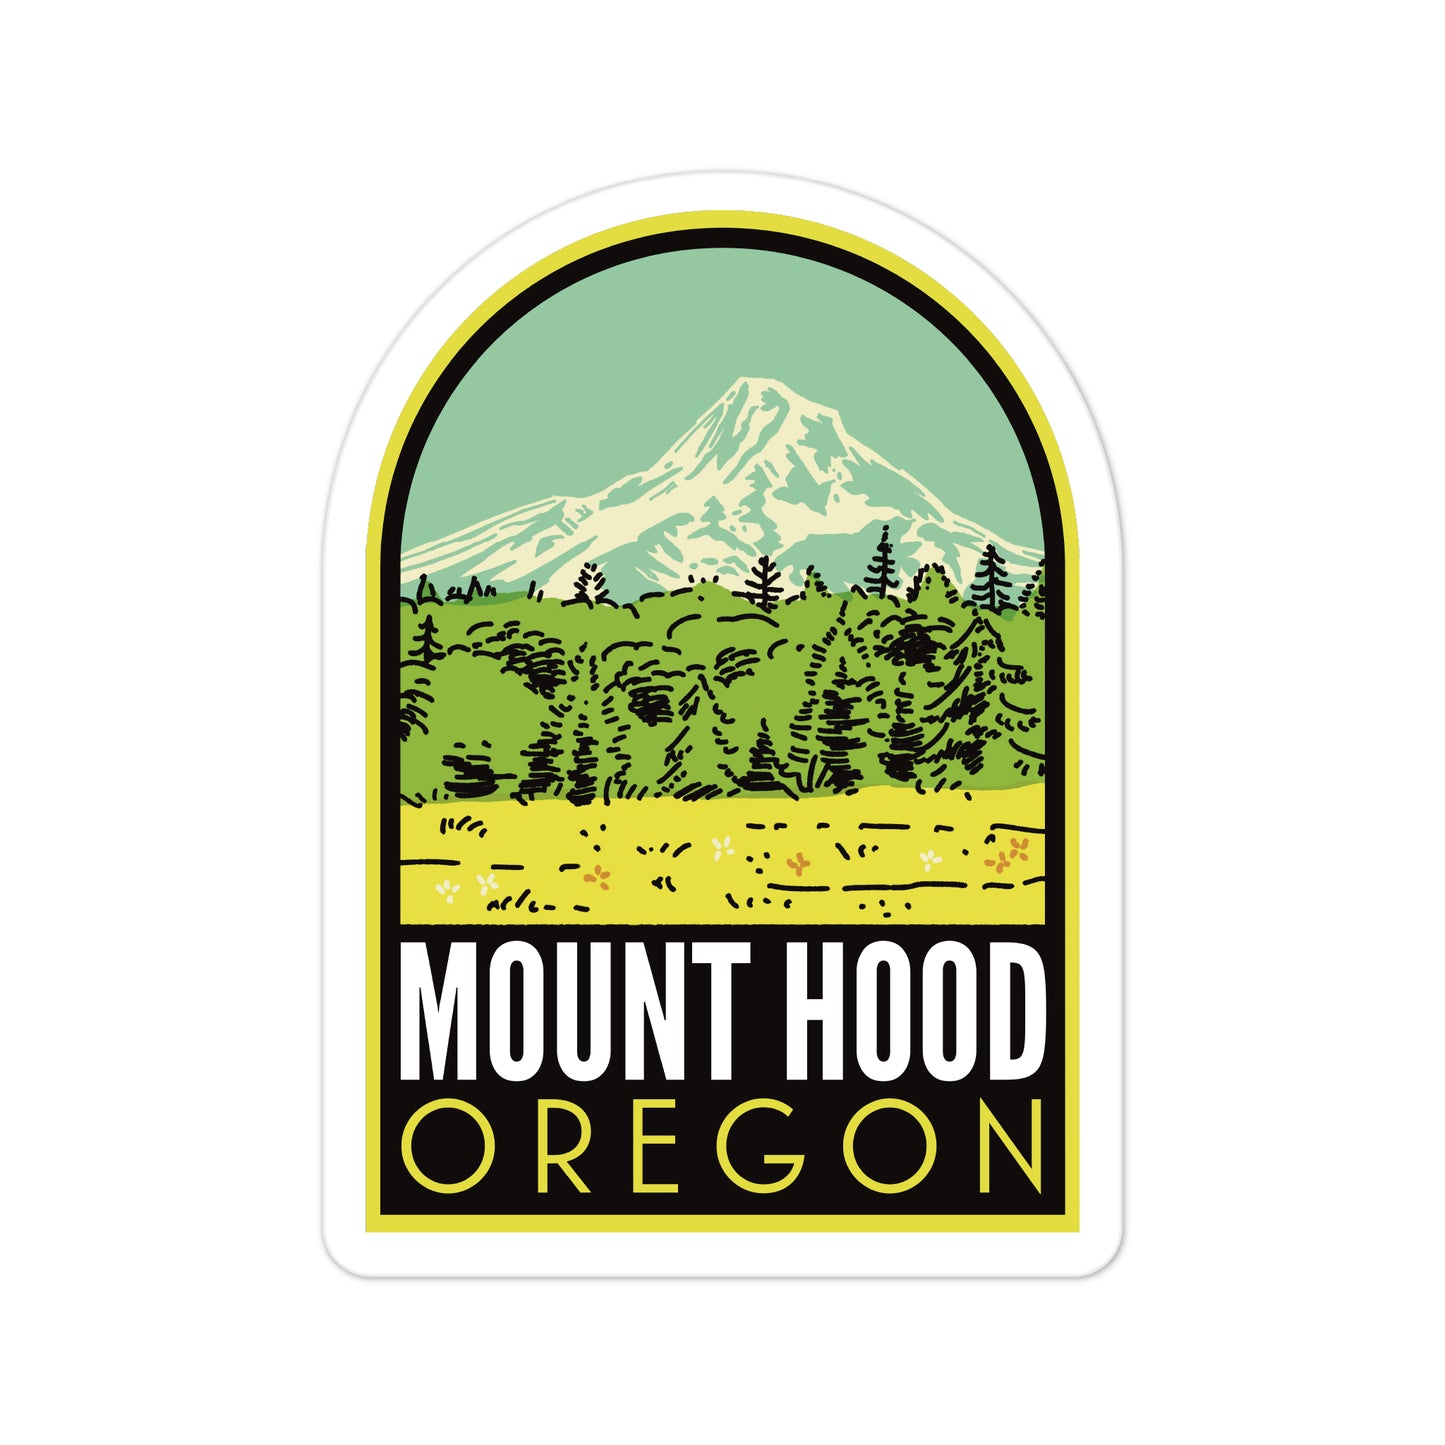 A sticker of Mount Hood Oregon